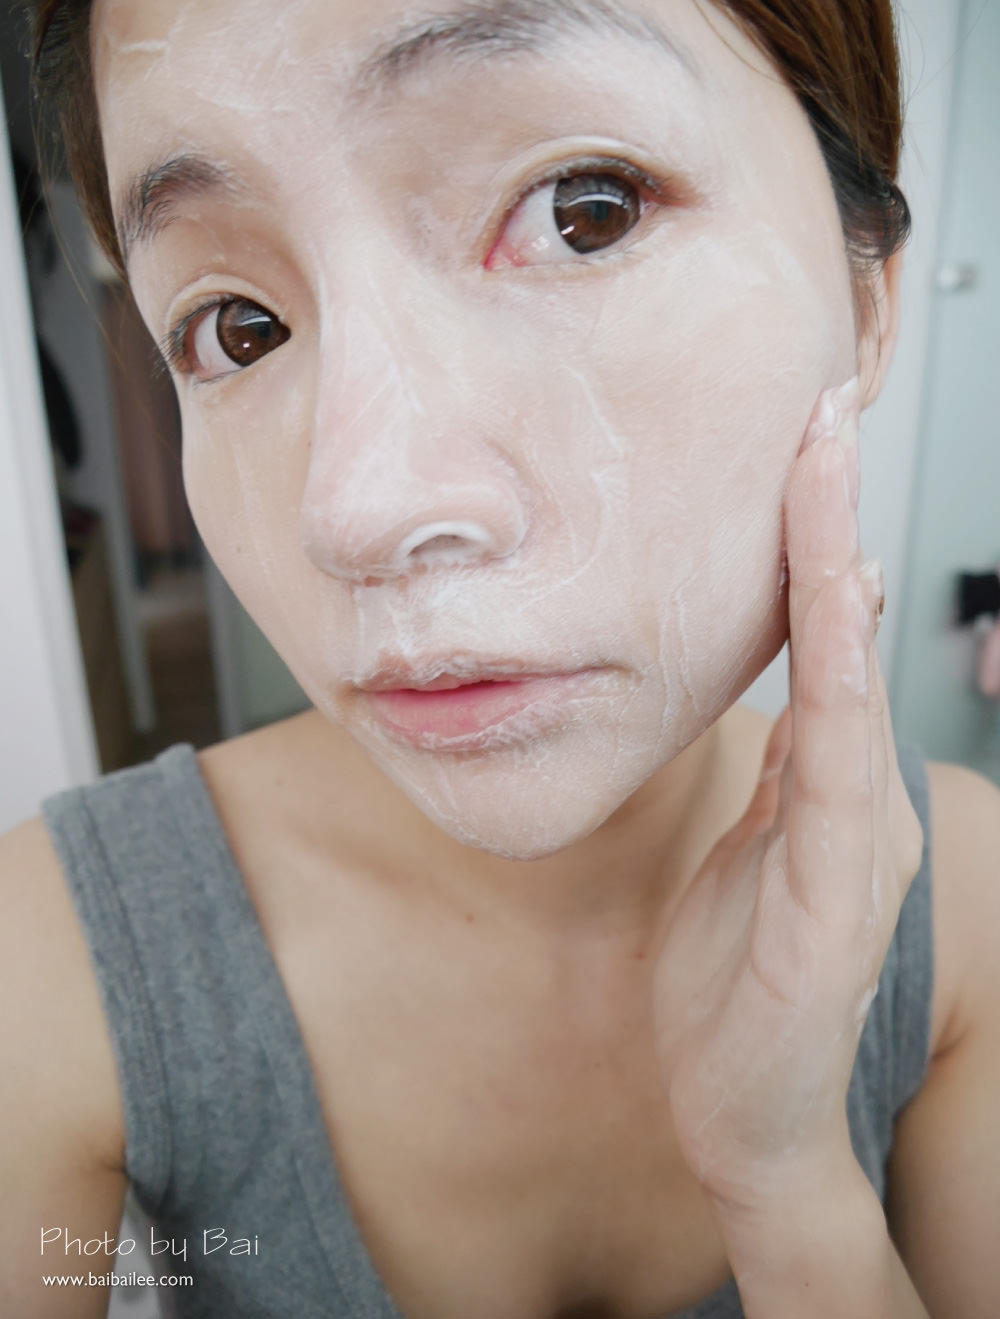 [洗面乳] 聖克萊爾純洗顏海泥洗面霜,淨化毛孔從簡單純粹的健康洗顏開始